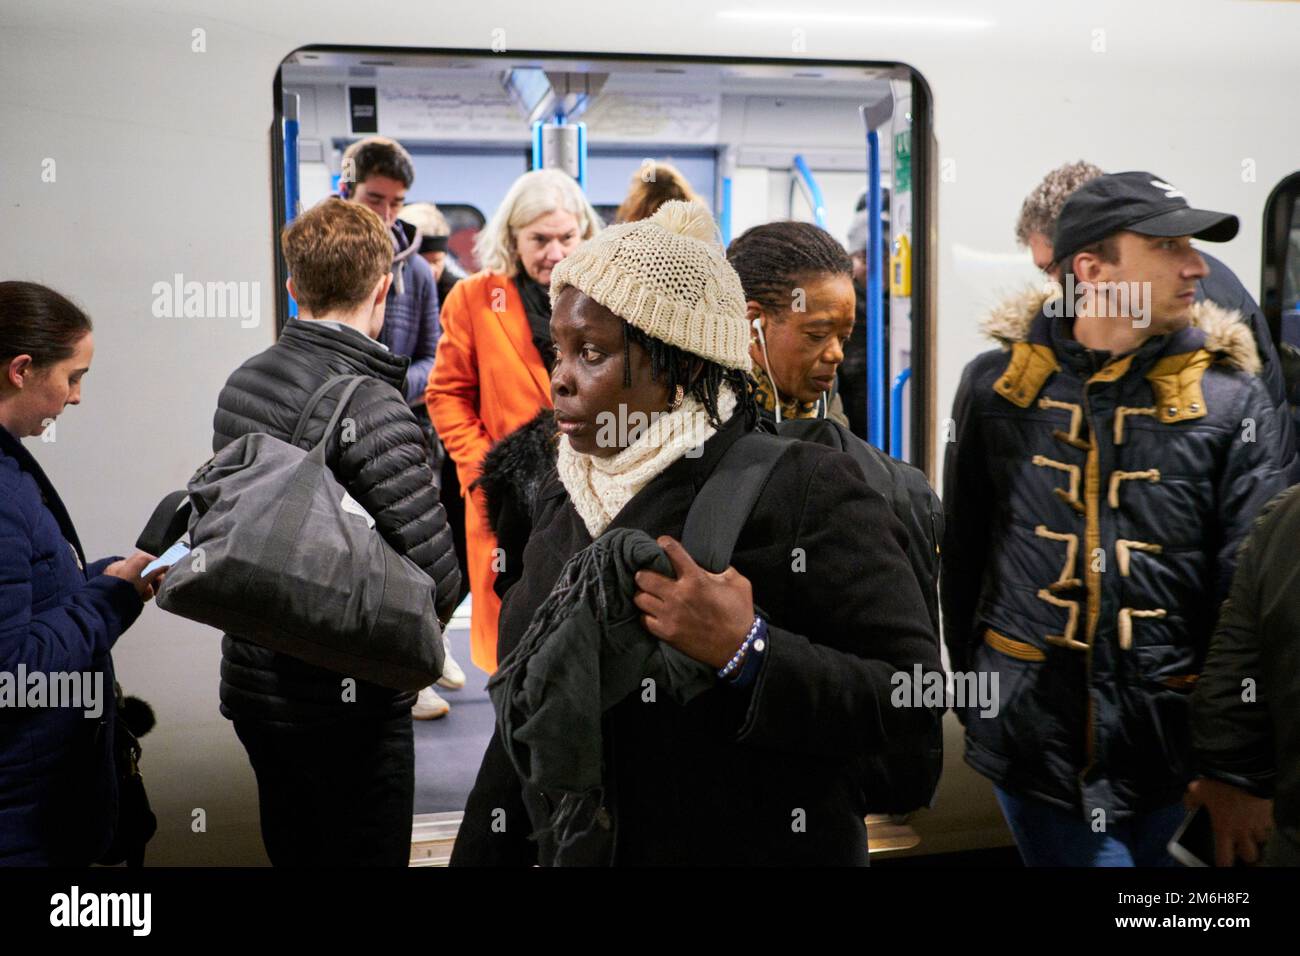 Une femme noire débarque un train à l'heure de pointe à londres Banque D'Images